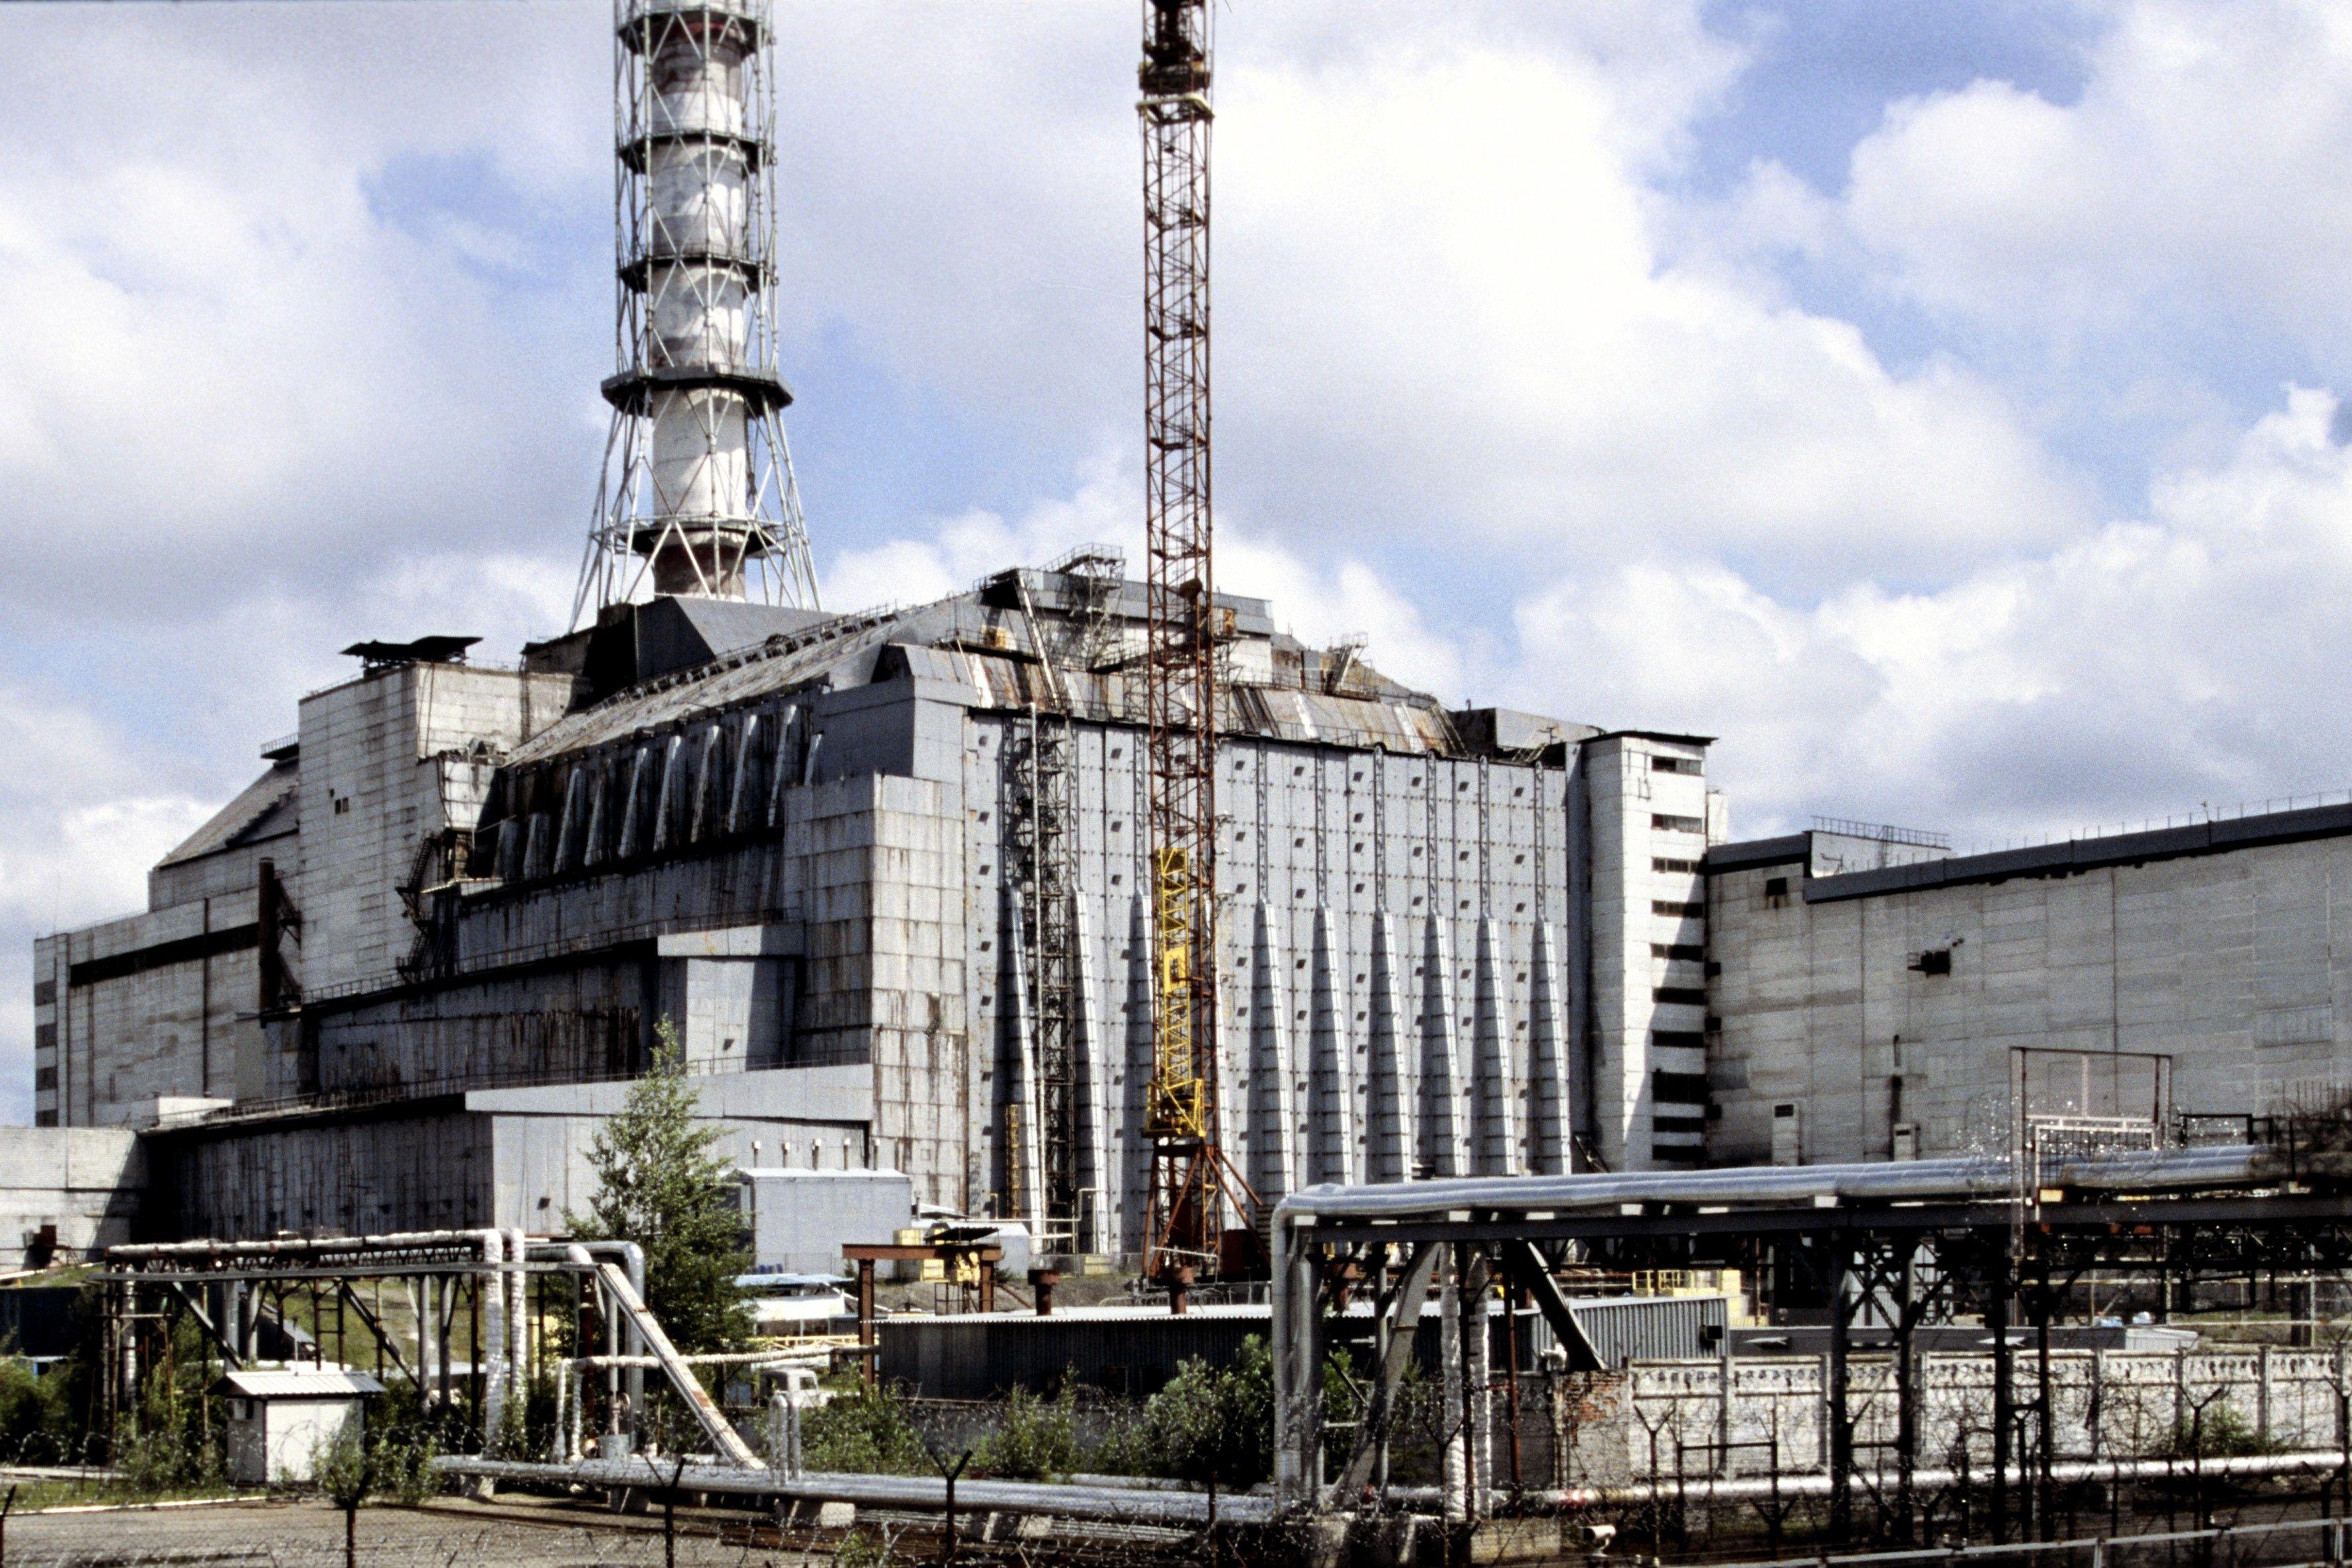 Http chernobyl. Припять четвертый энергоблок. АЭС Чернобыль четвёртый энергоблок. Атомная электростанция Чернобыль сейчас. Припять Чернобыль ЧАЭС.